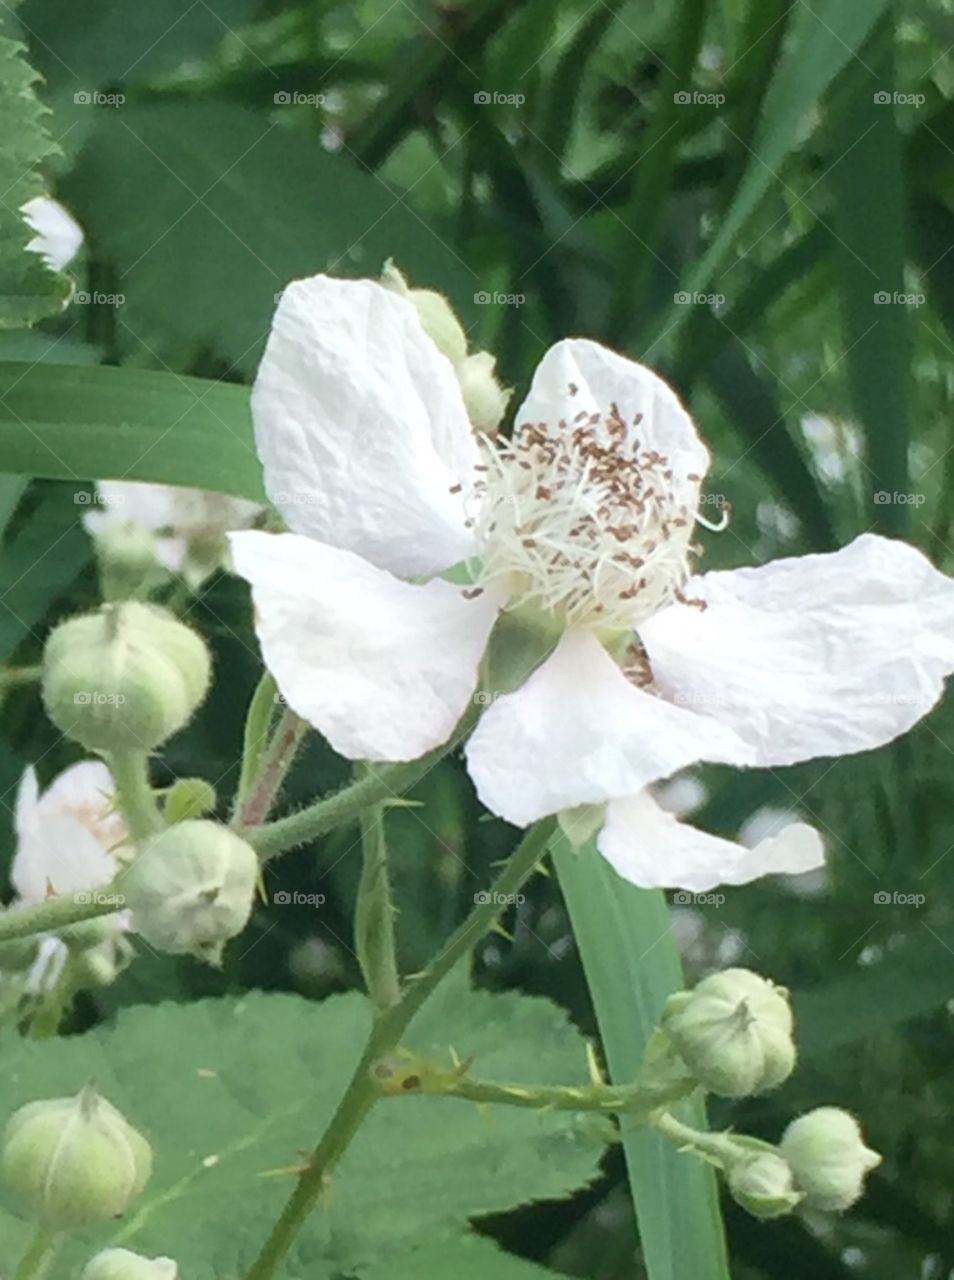 Blackberry blossom white